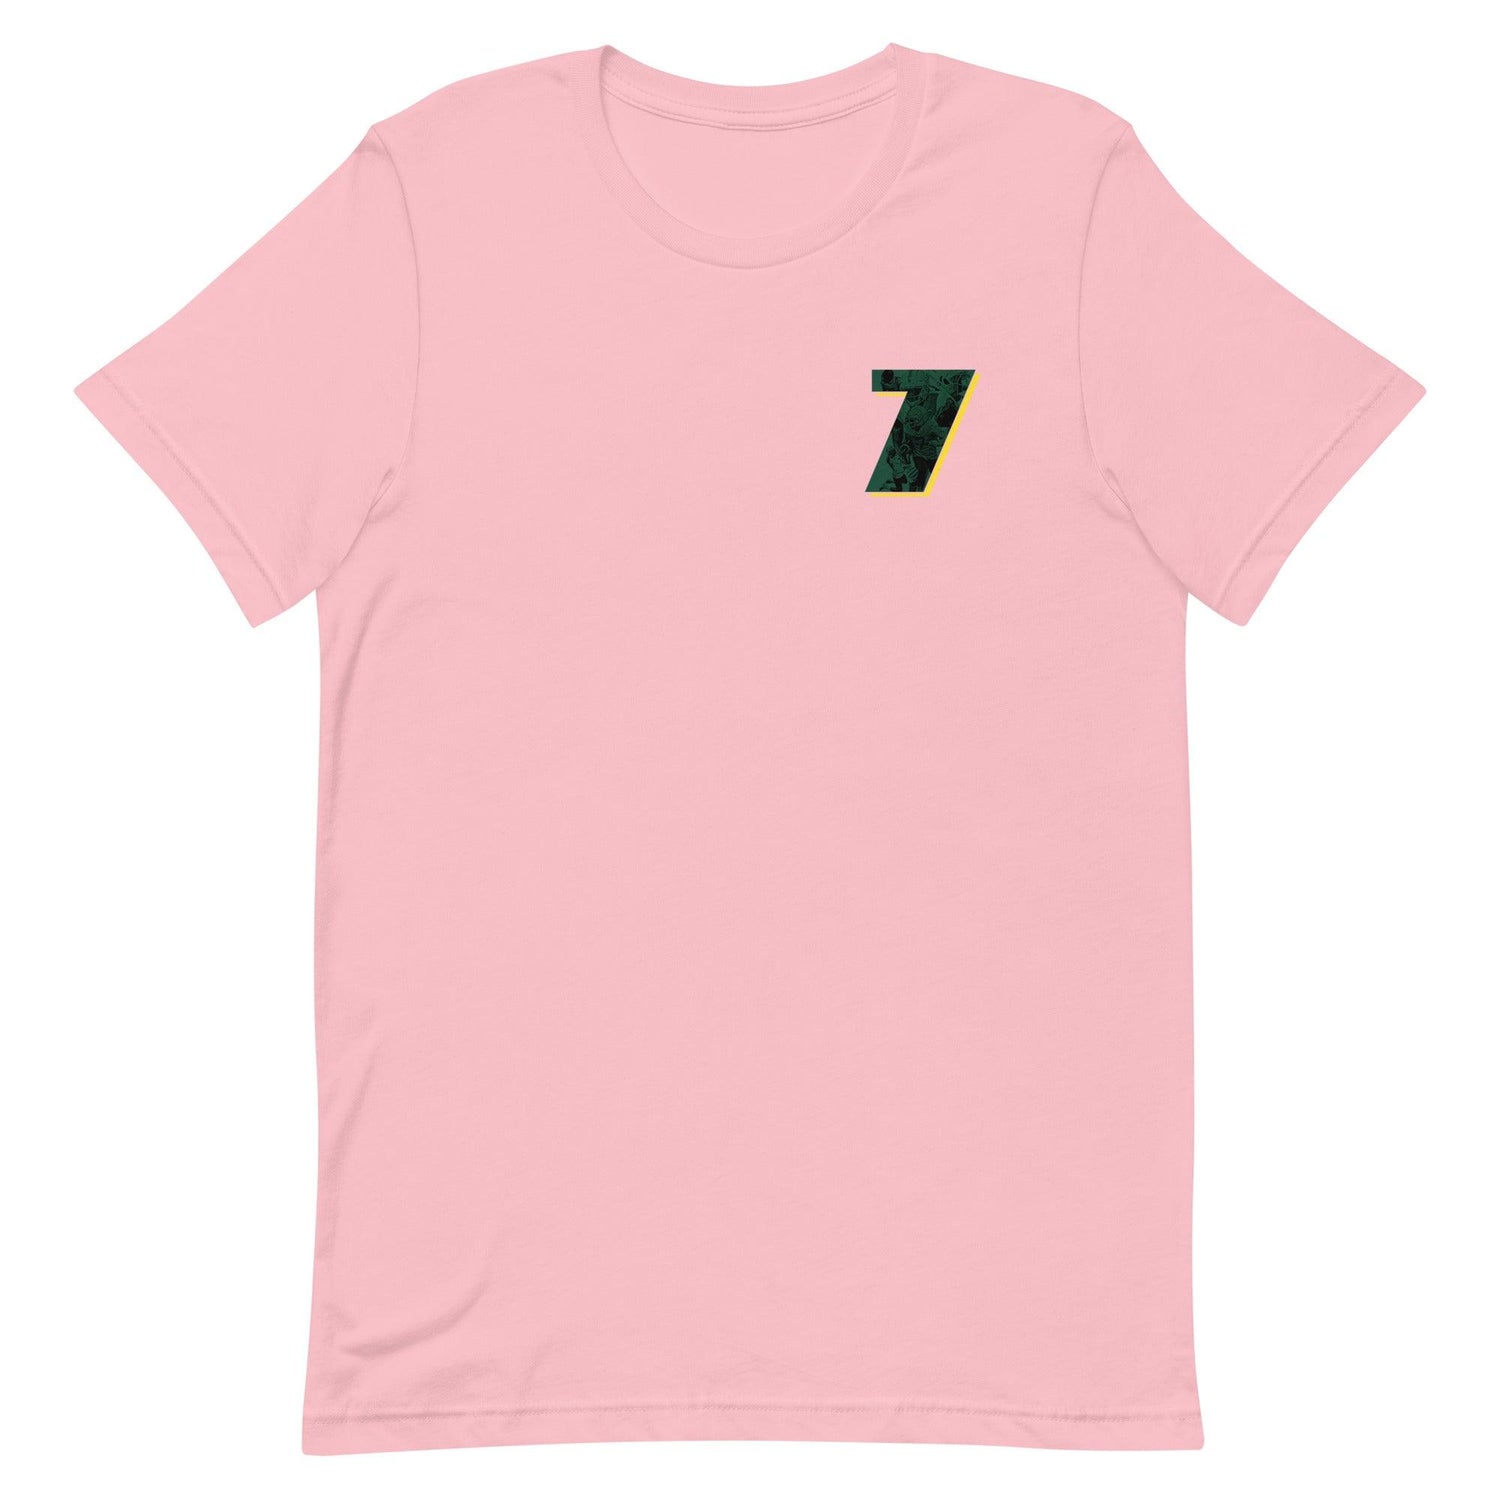 Seven McGee "7" t-shirt - Fan Arch